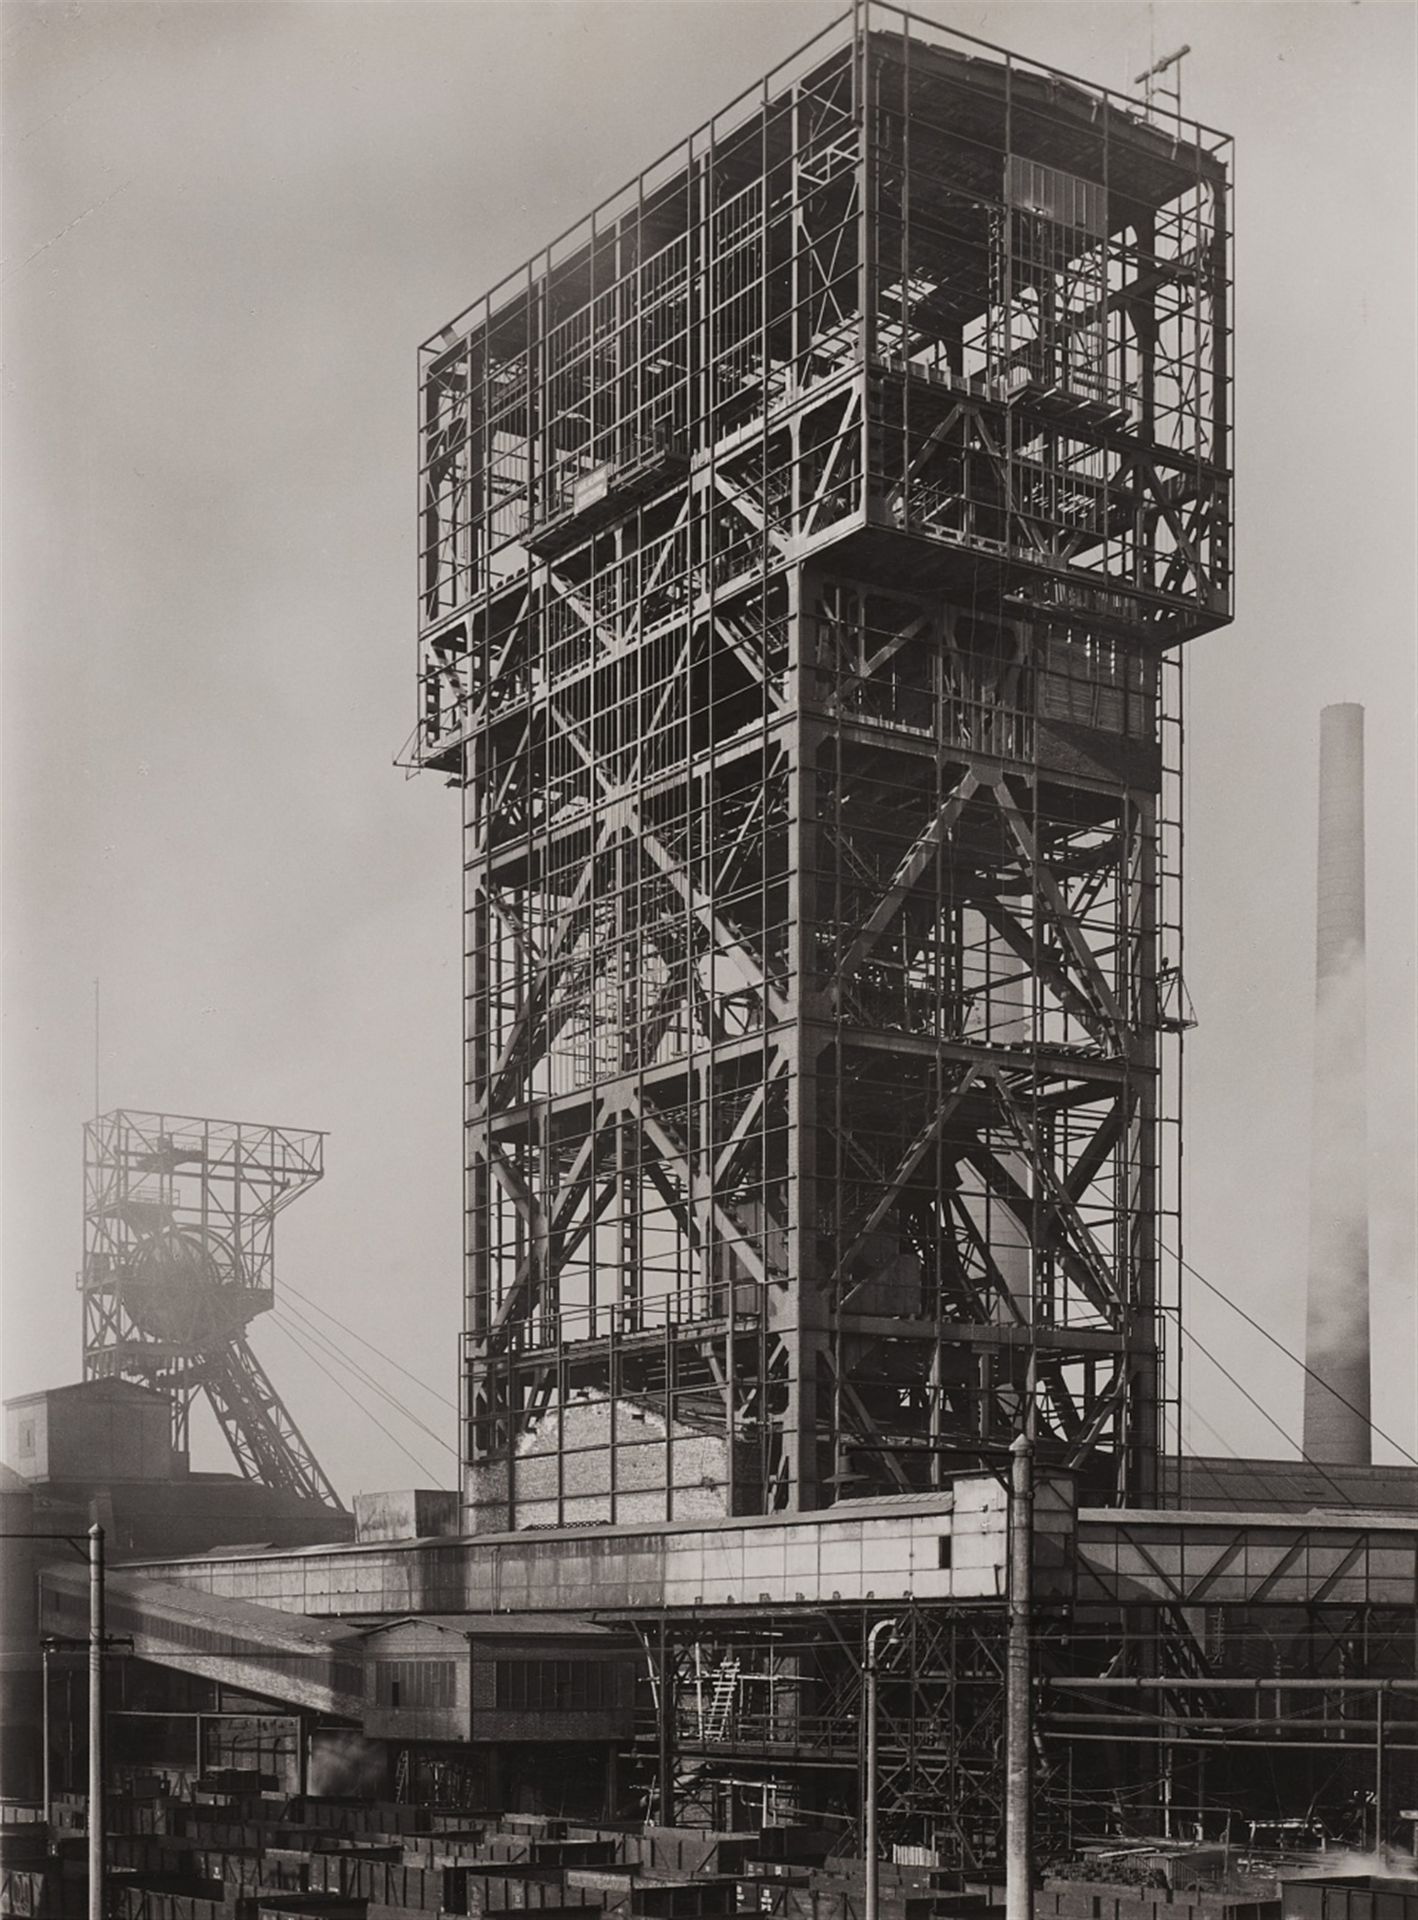 Albert Renger-Patzsch, Hammerhead winding tower, Heinrich Robert Colliery, Hamm